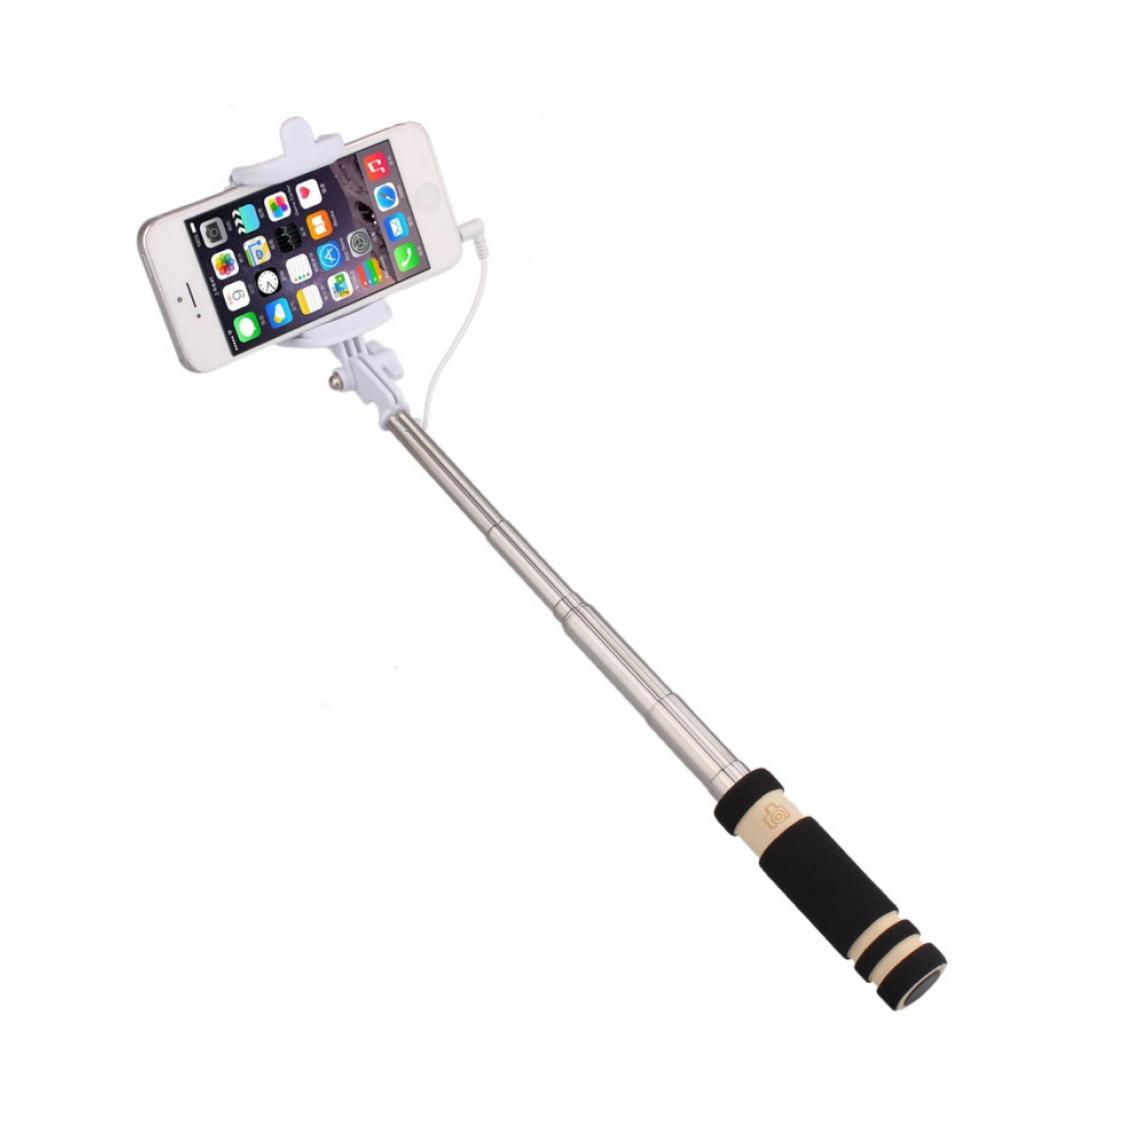 Shot - Mini Perche Selfie pour SAMSUNG Galaxy A71 Smartphone avec Cable Jack Selfie Stick Android IOS Reglable Bouton Photo (NOIR) - Autres accessoires smartphone